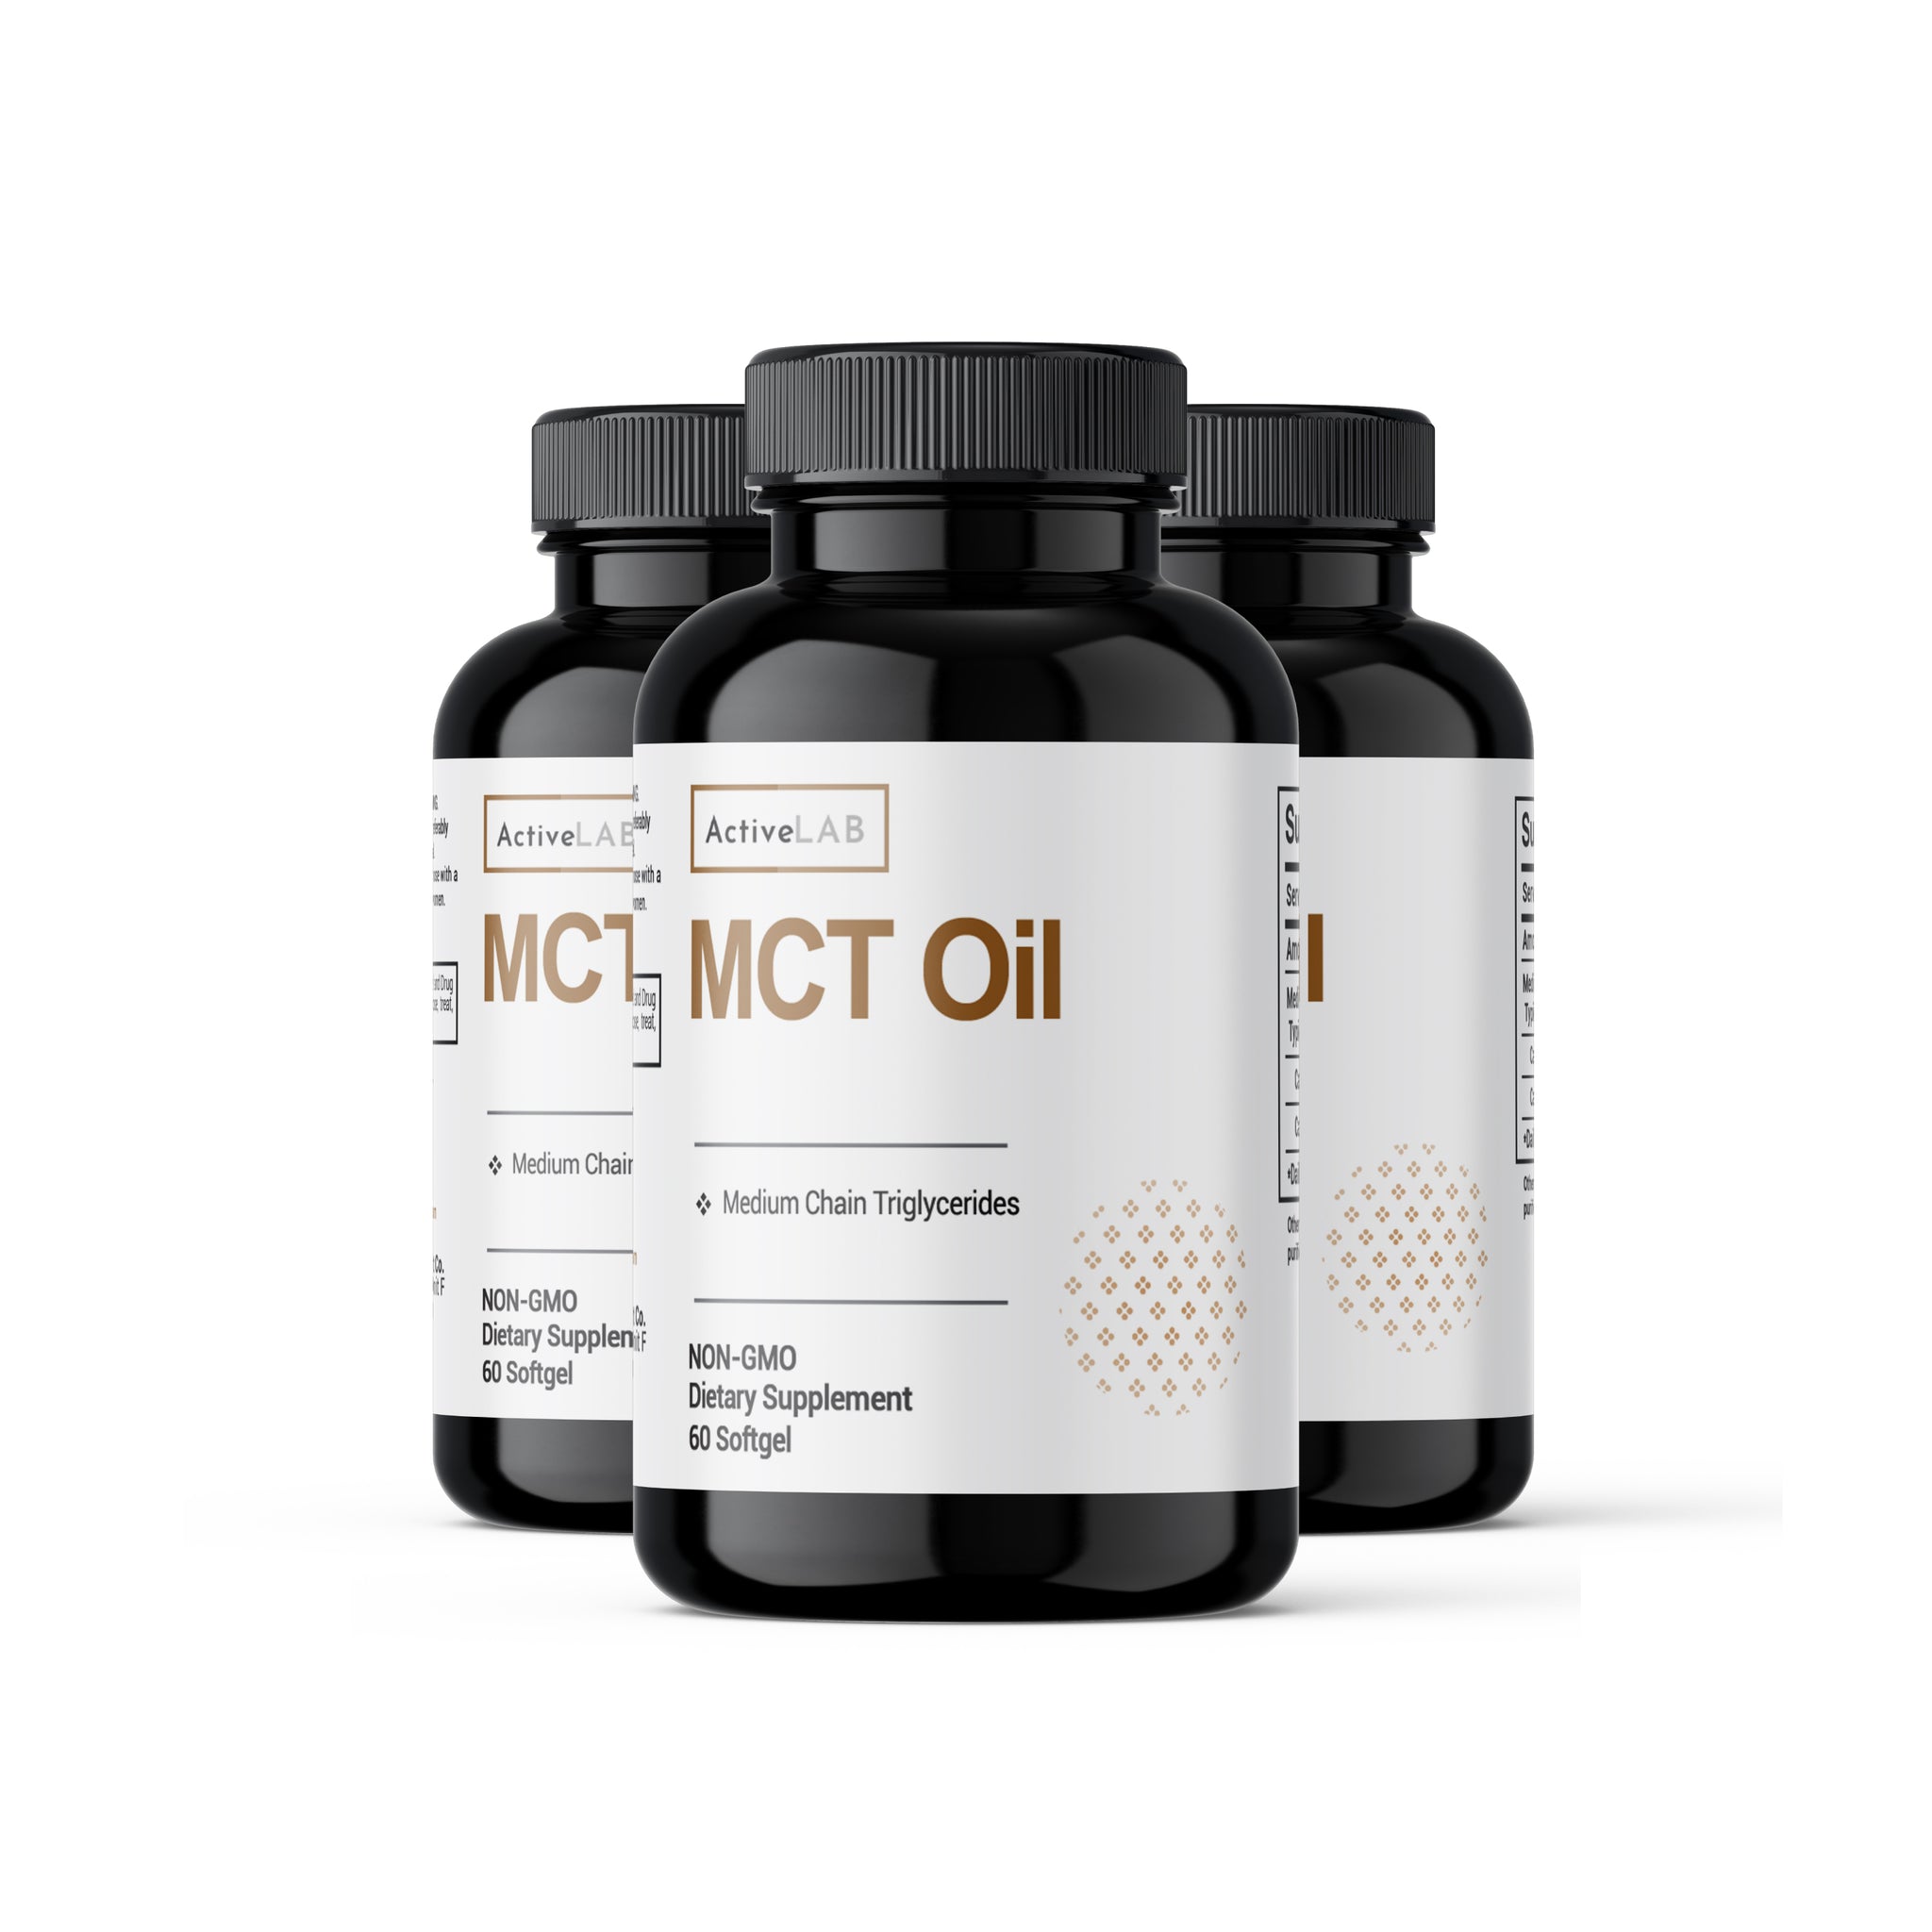 MCT Oil 1000mg